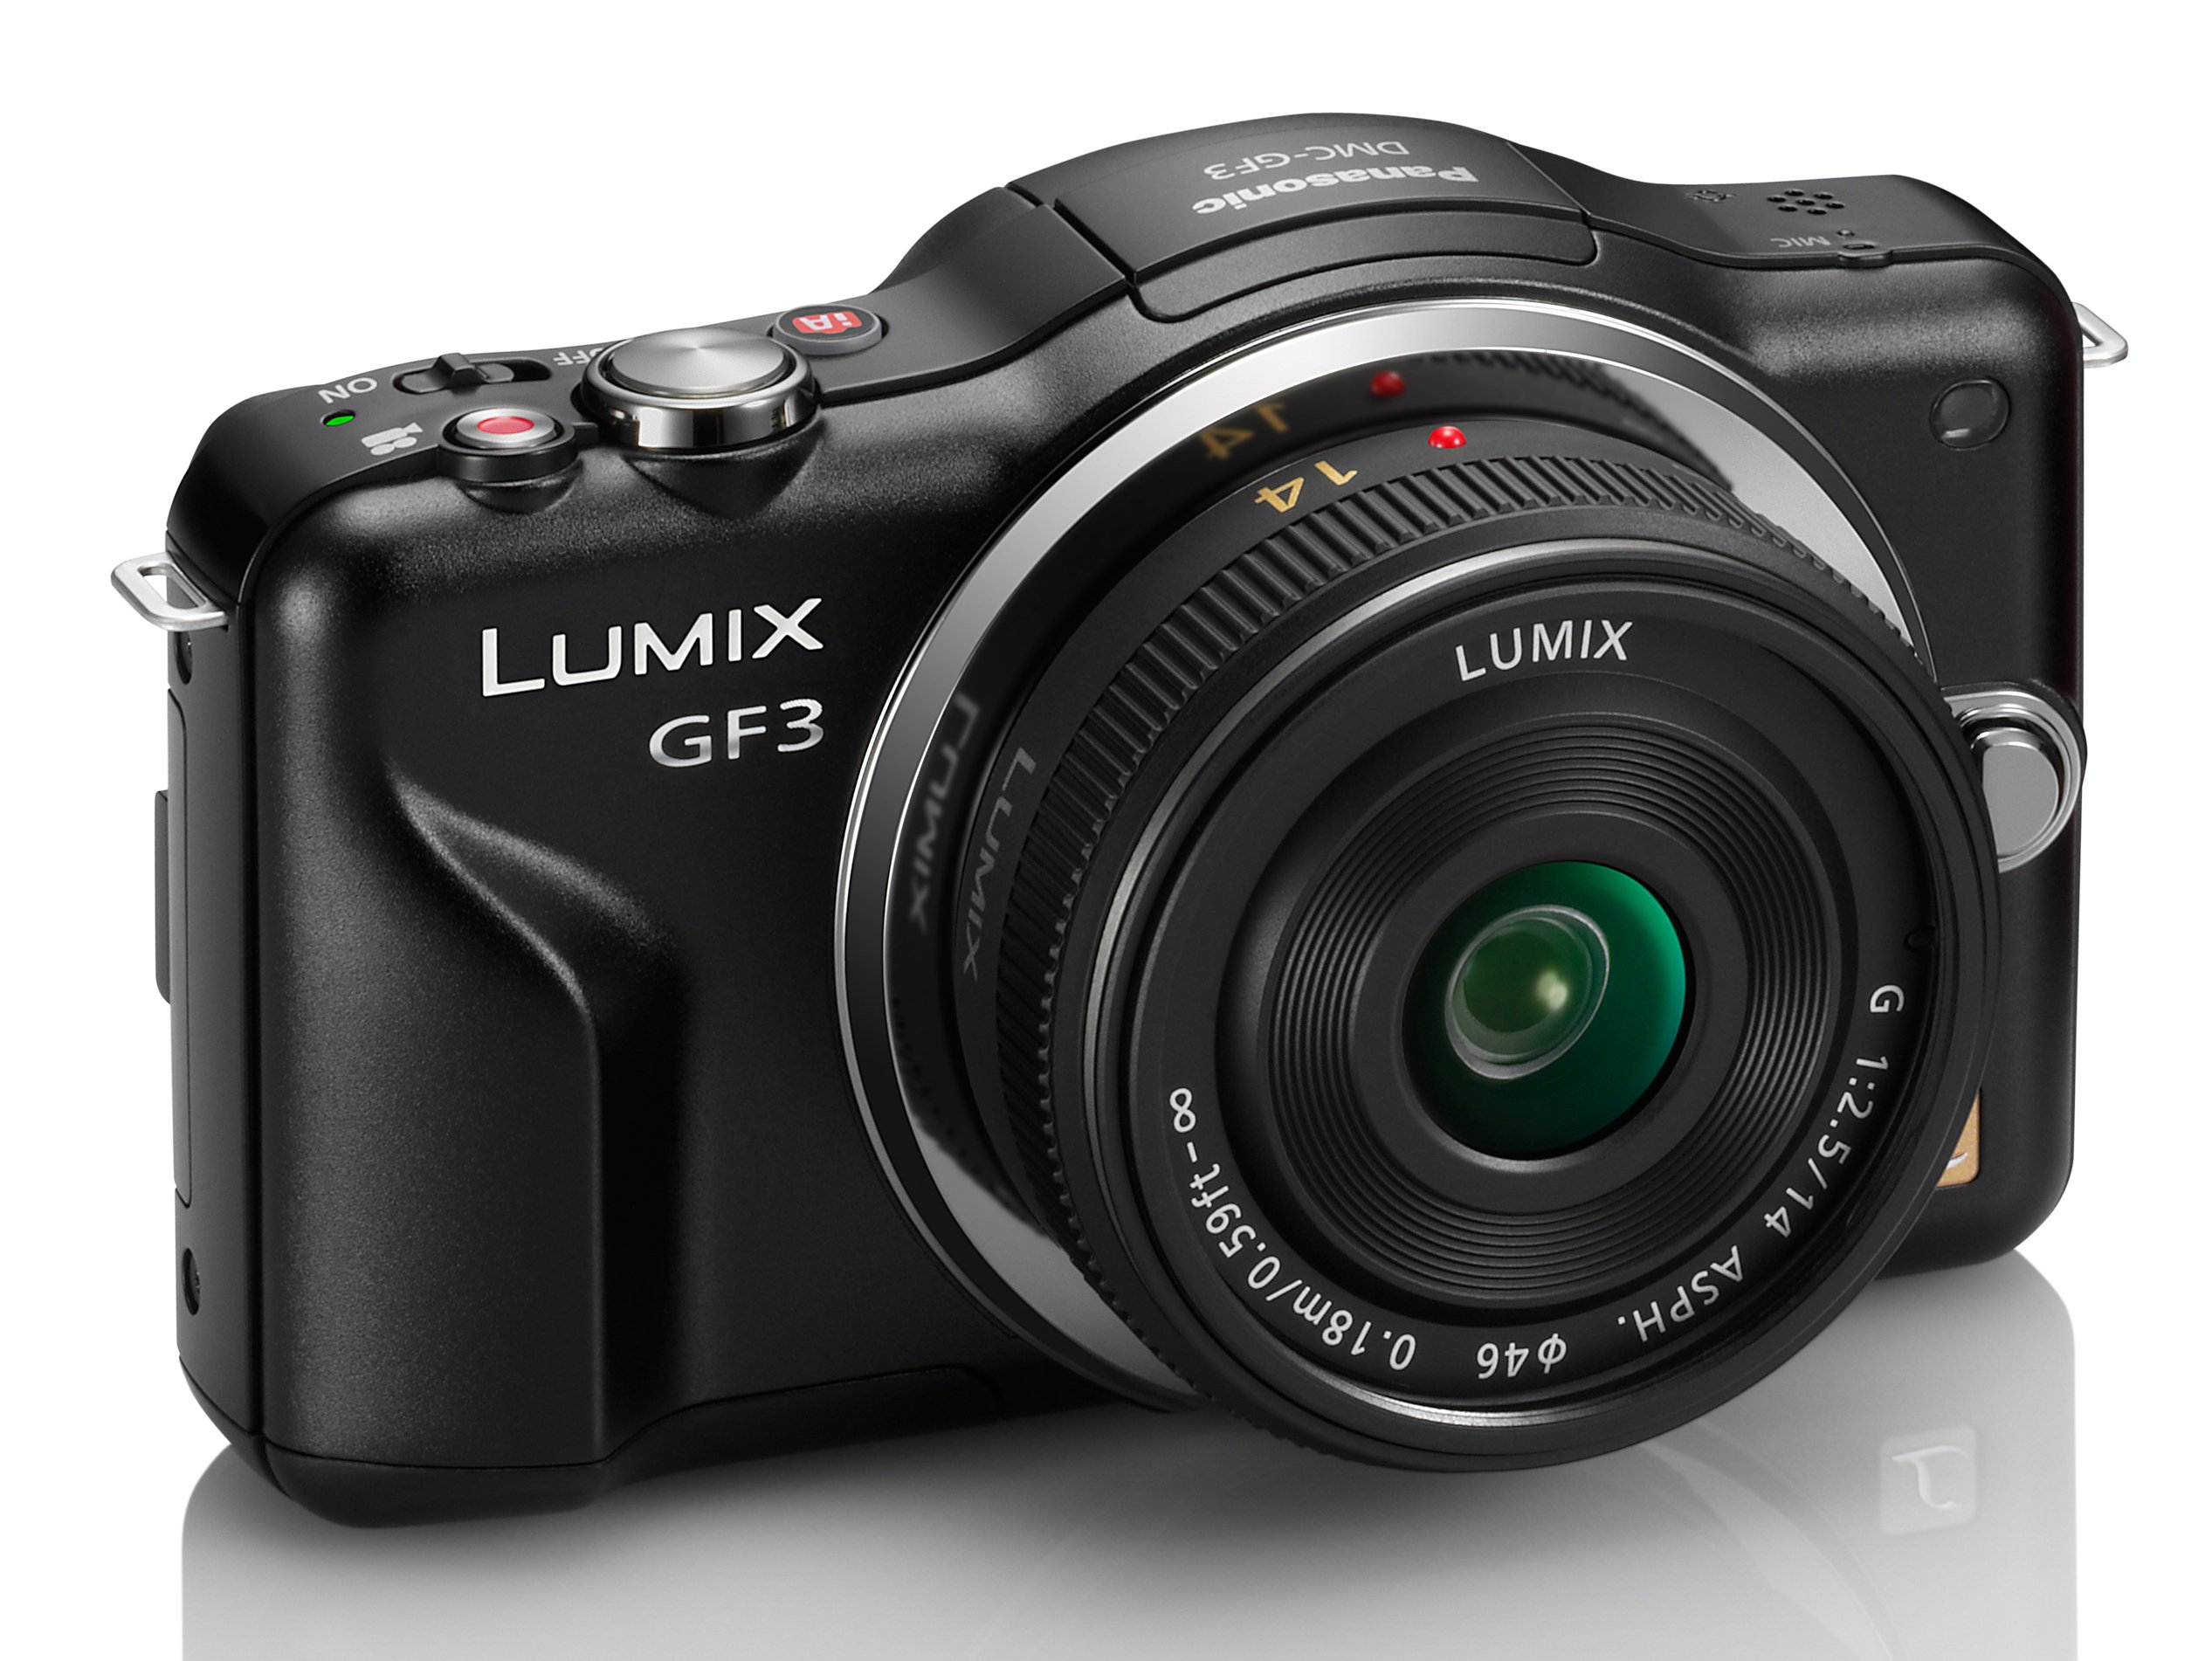 Panasonic Lumix DMC-GF3CK Kit 12.1 MP Digital Camera with 14mm Pancake Lens